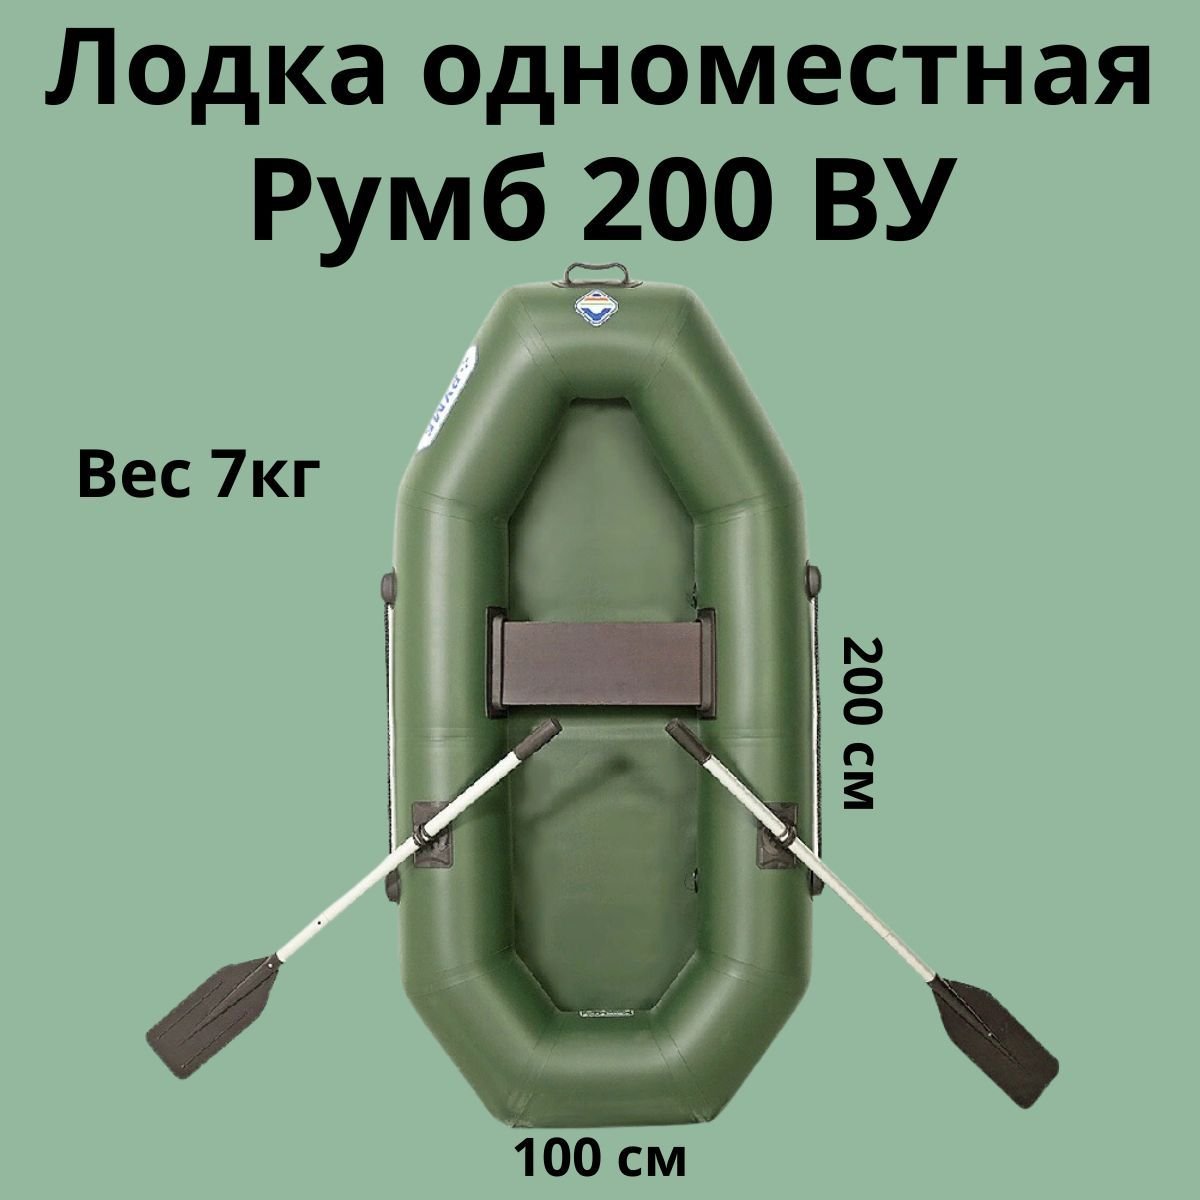 ЛодкаПВХгребнаяРумб200ВУ(Зеленый),гребная,длярыбалки,сварнойшов,1-местная,одноместная,2метра